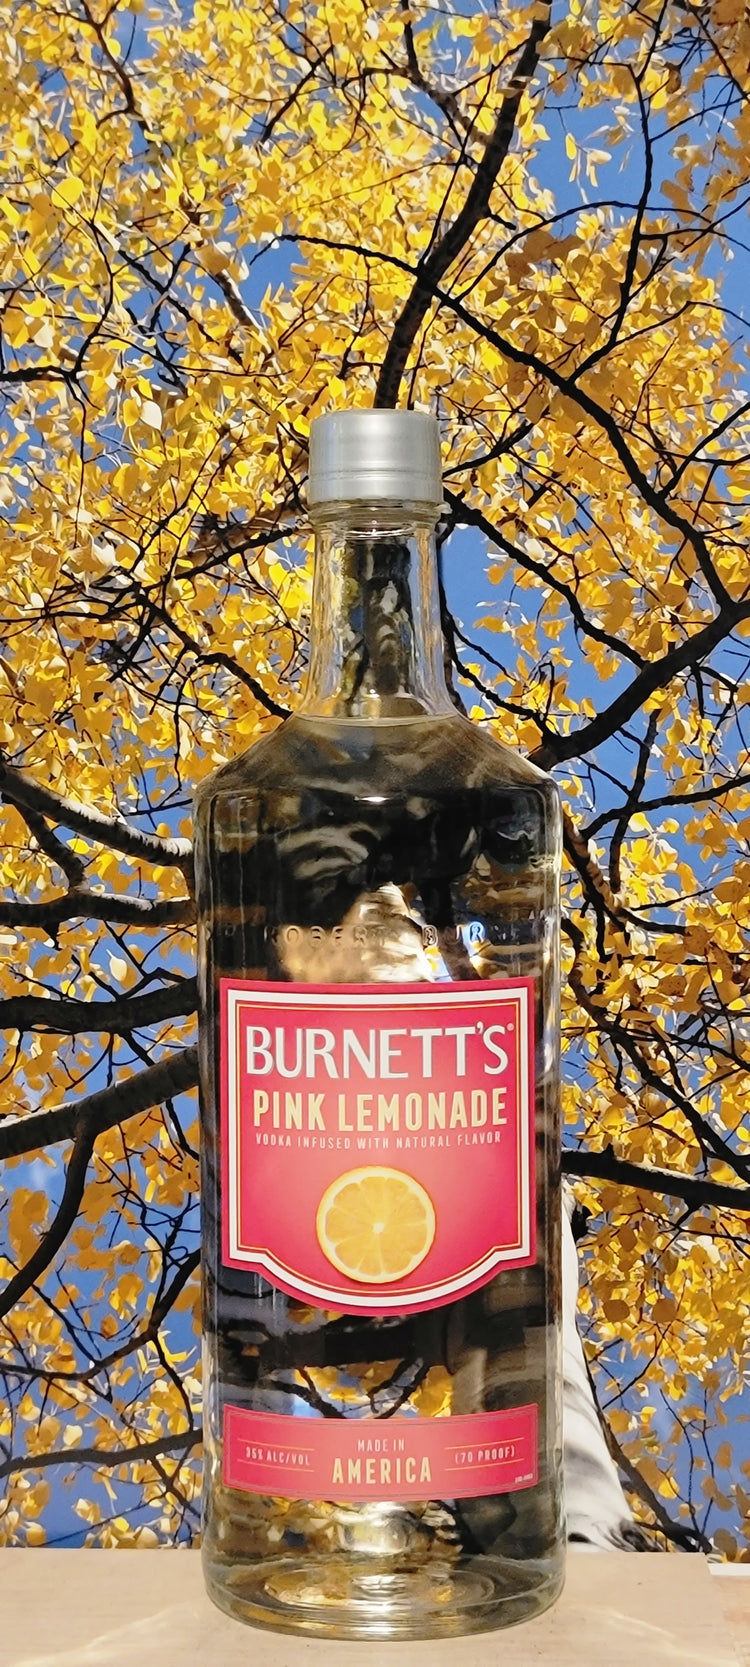 Burnett's pink lemonade vodka